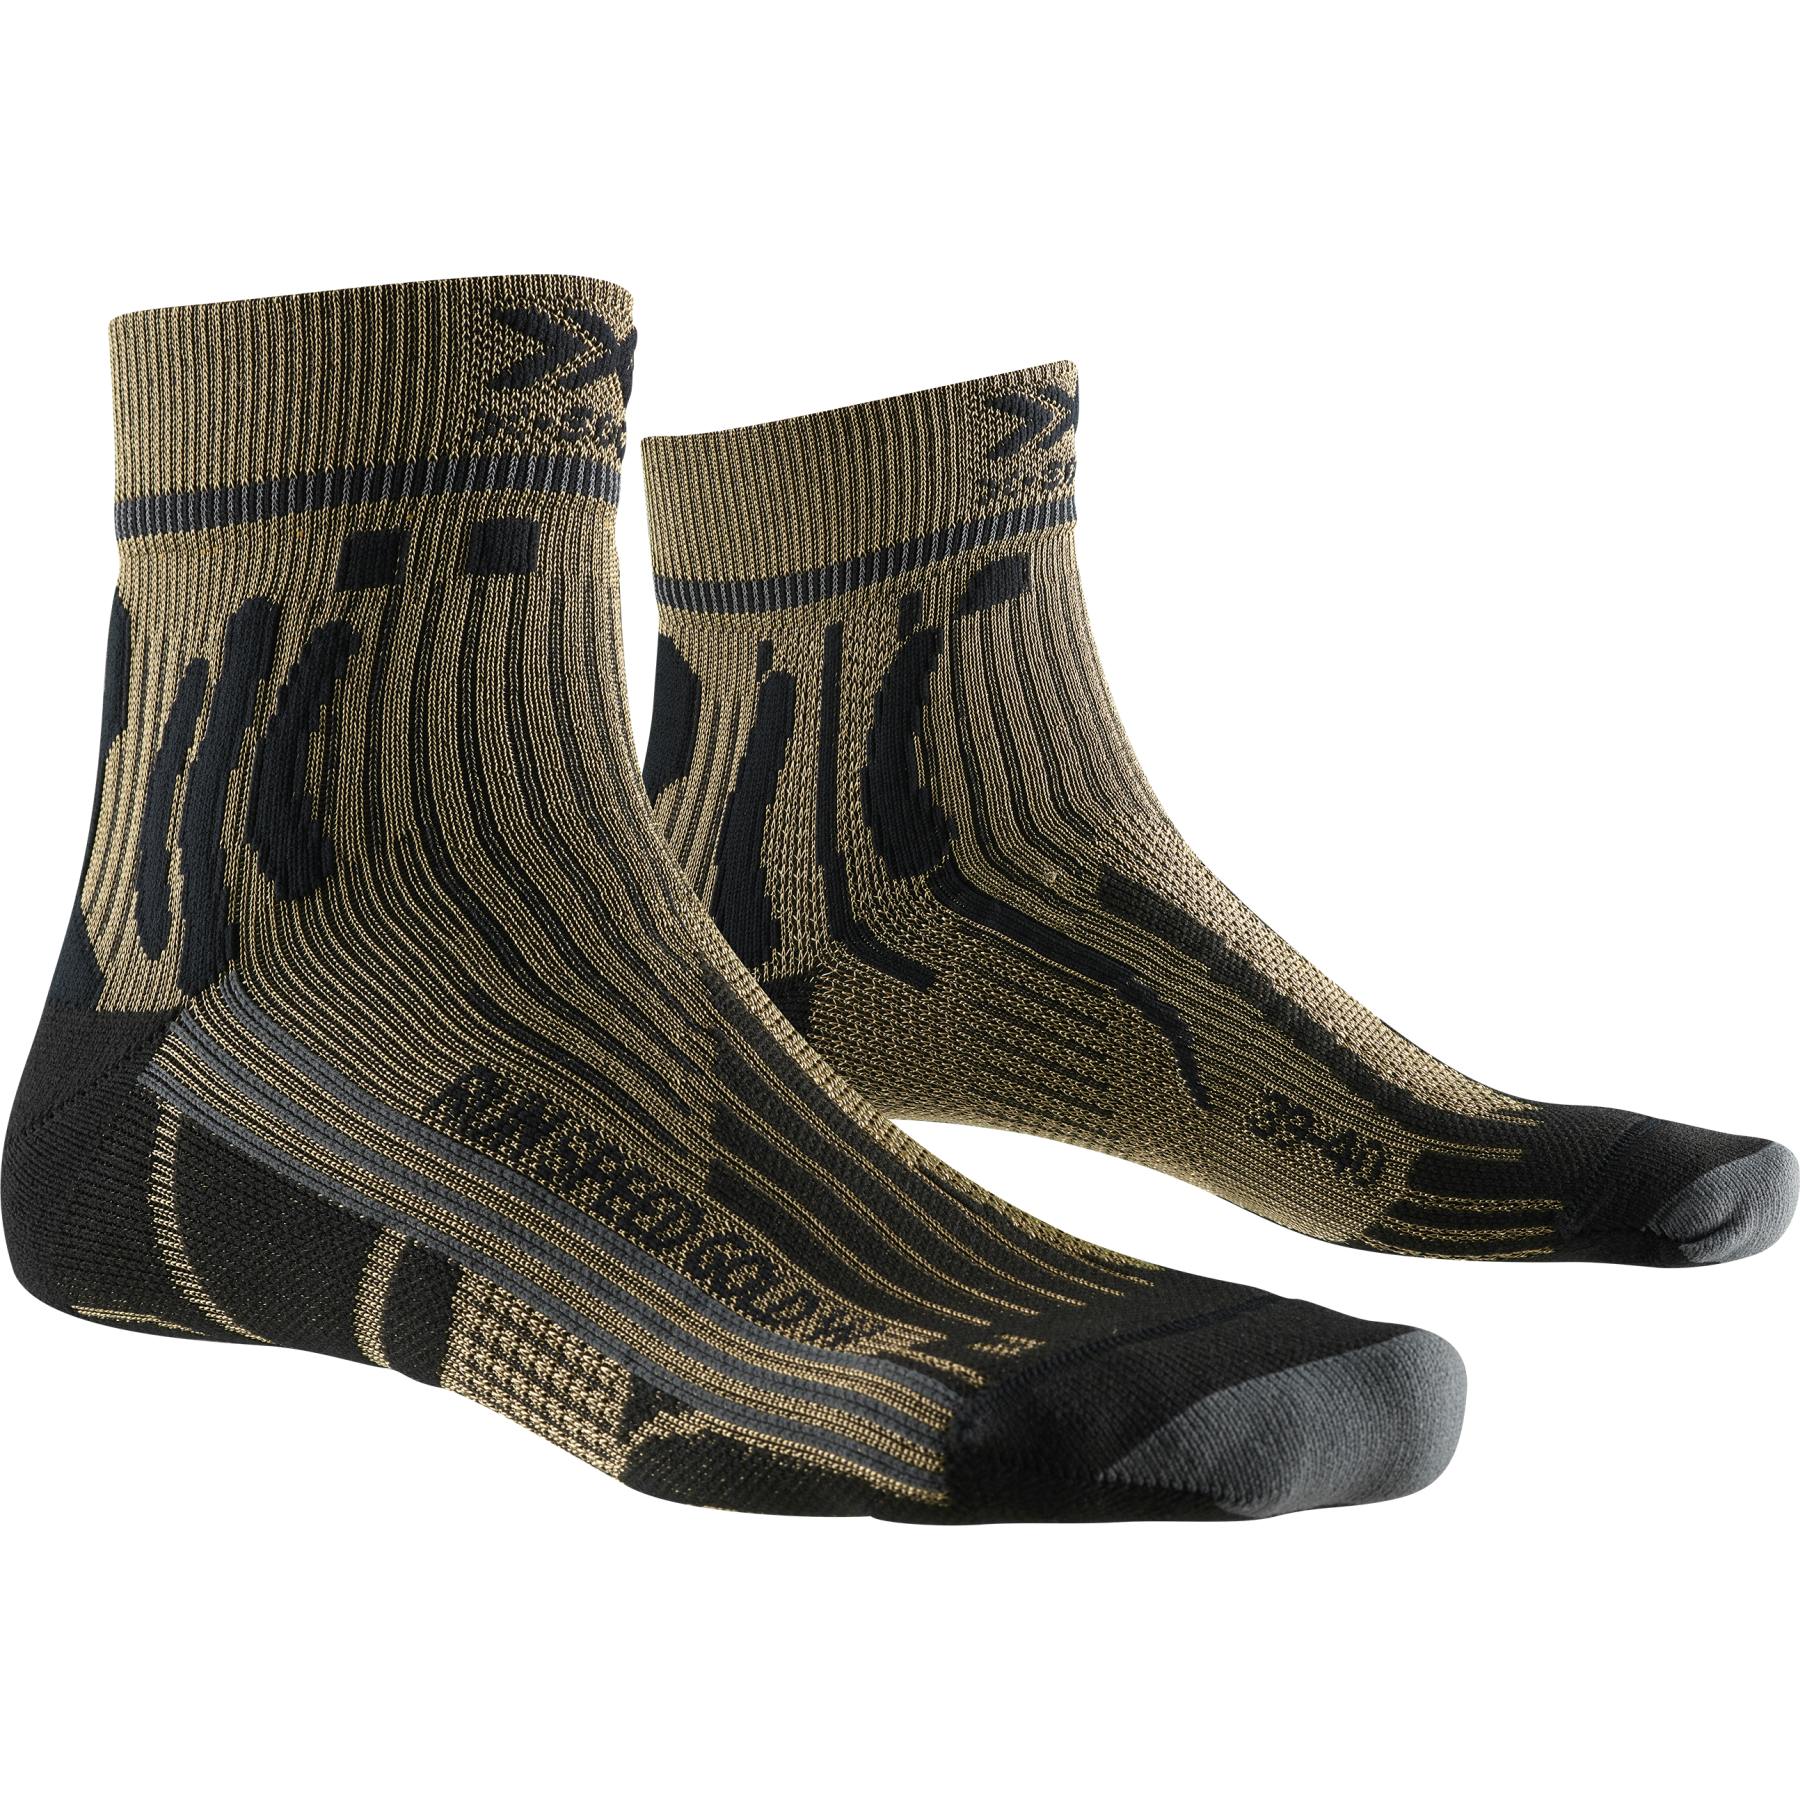 Produktbild von X-Socks Run Speed Two Gold Damen Laufsocken - gold/black